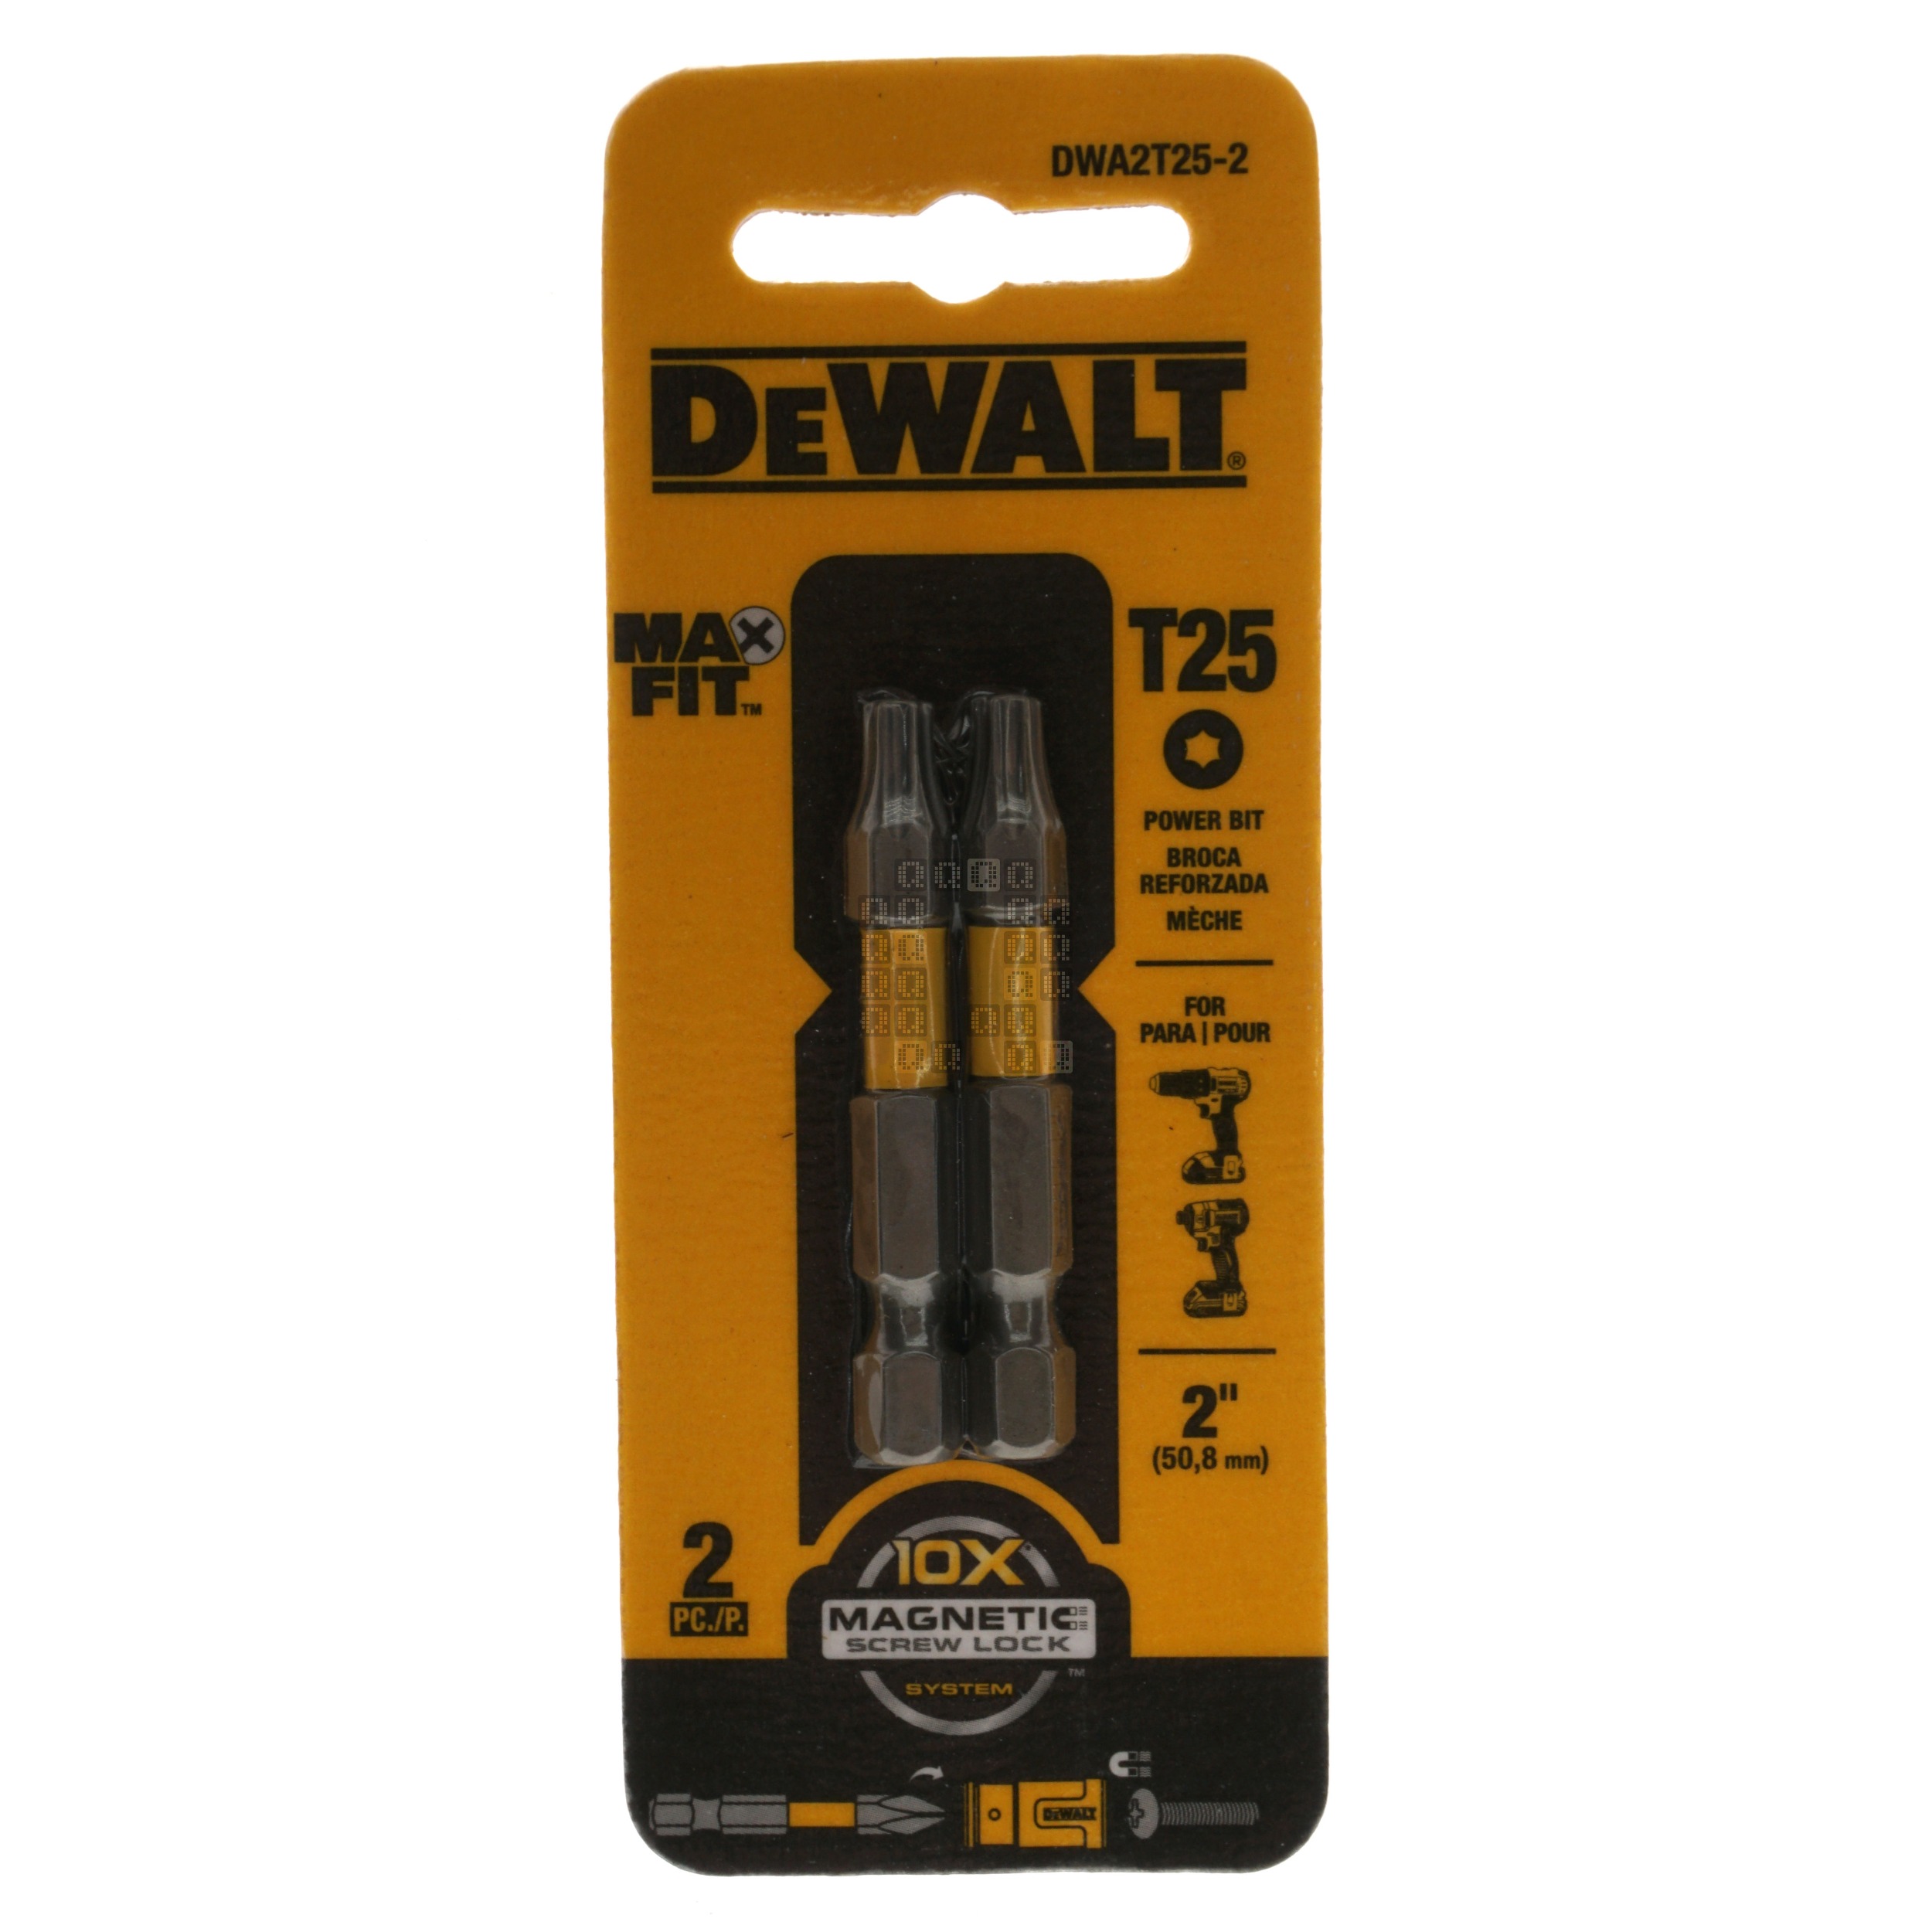 DeWALT DWA2T25-2 T25 TORX MAX FIT Power Bit, 2" Length, 2-Pack